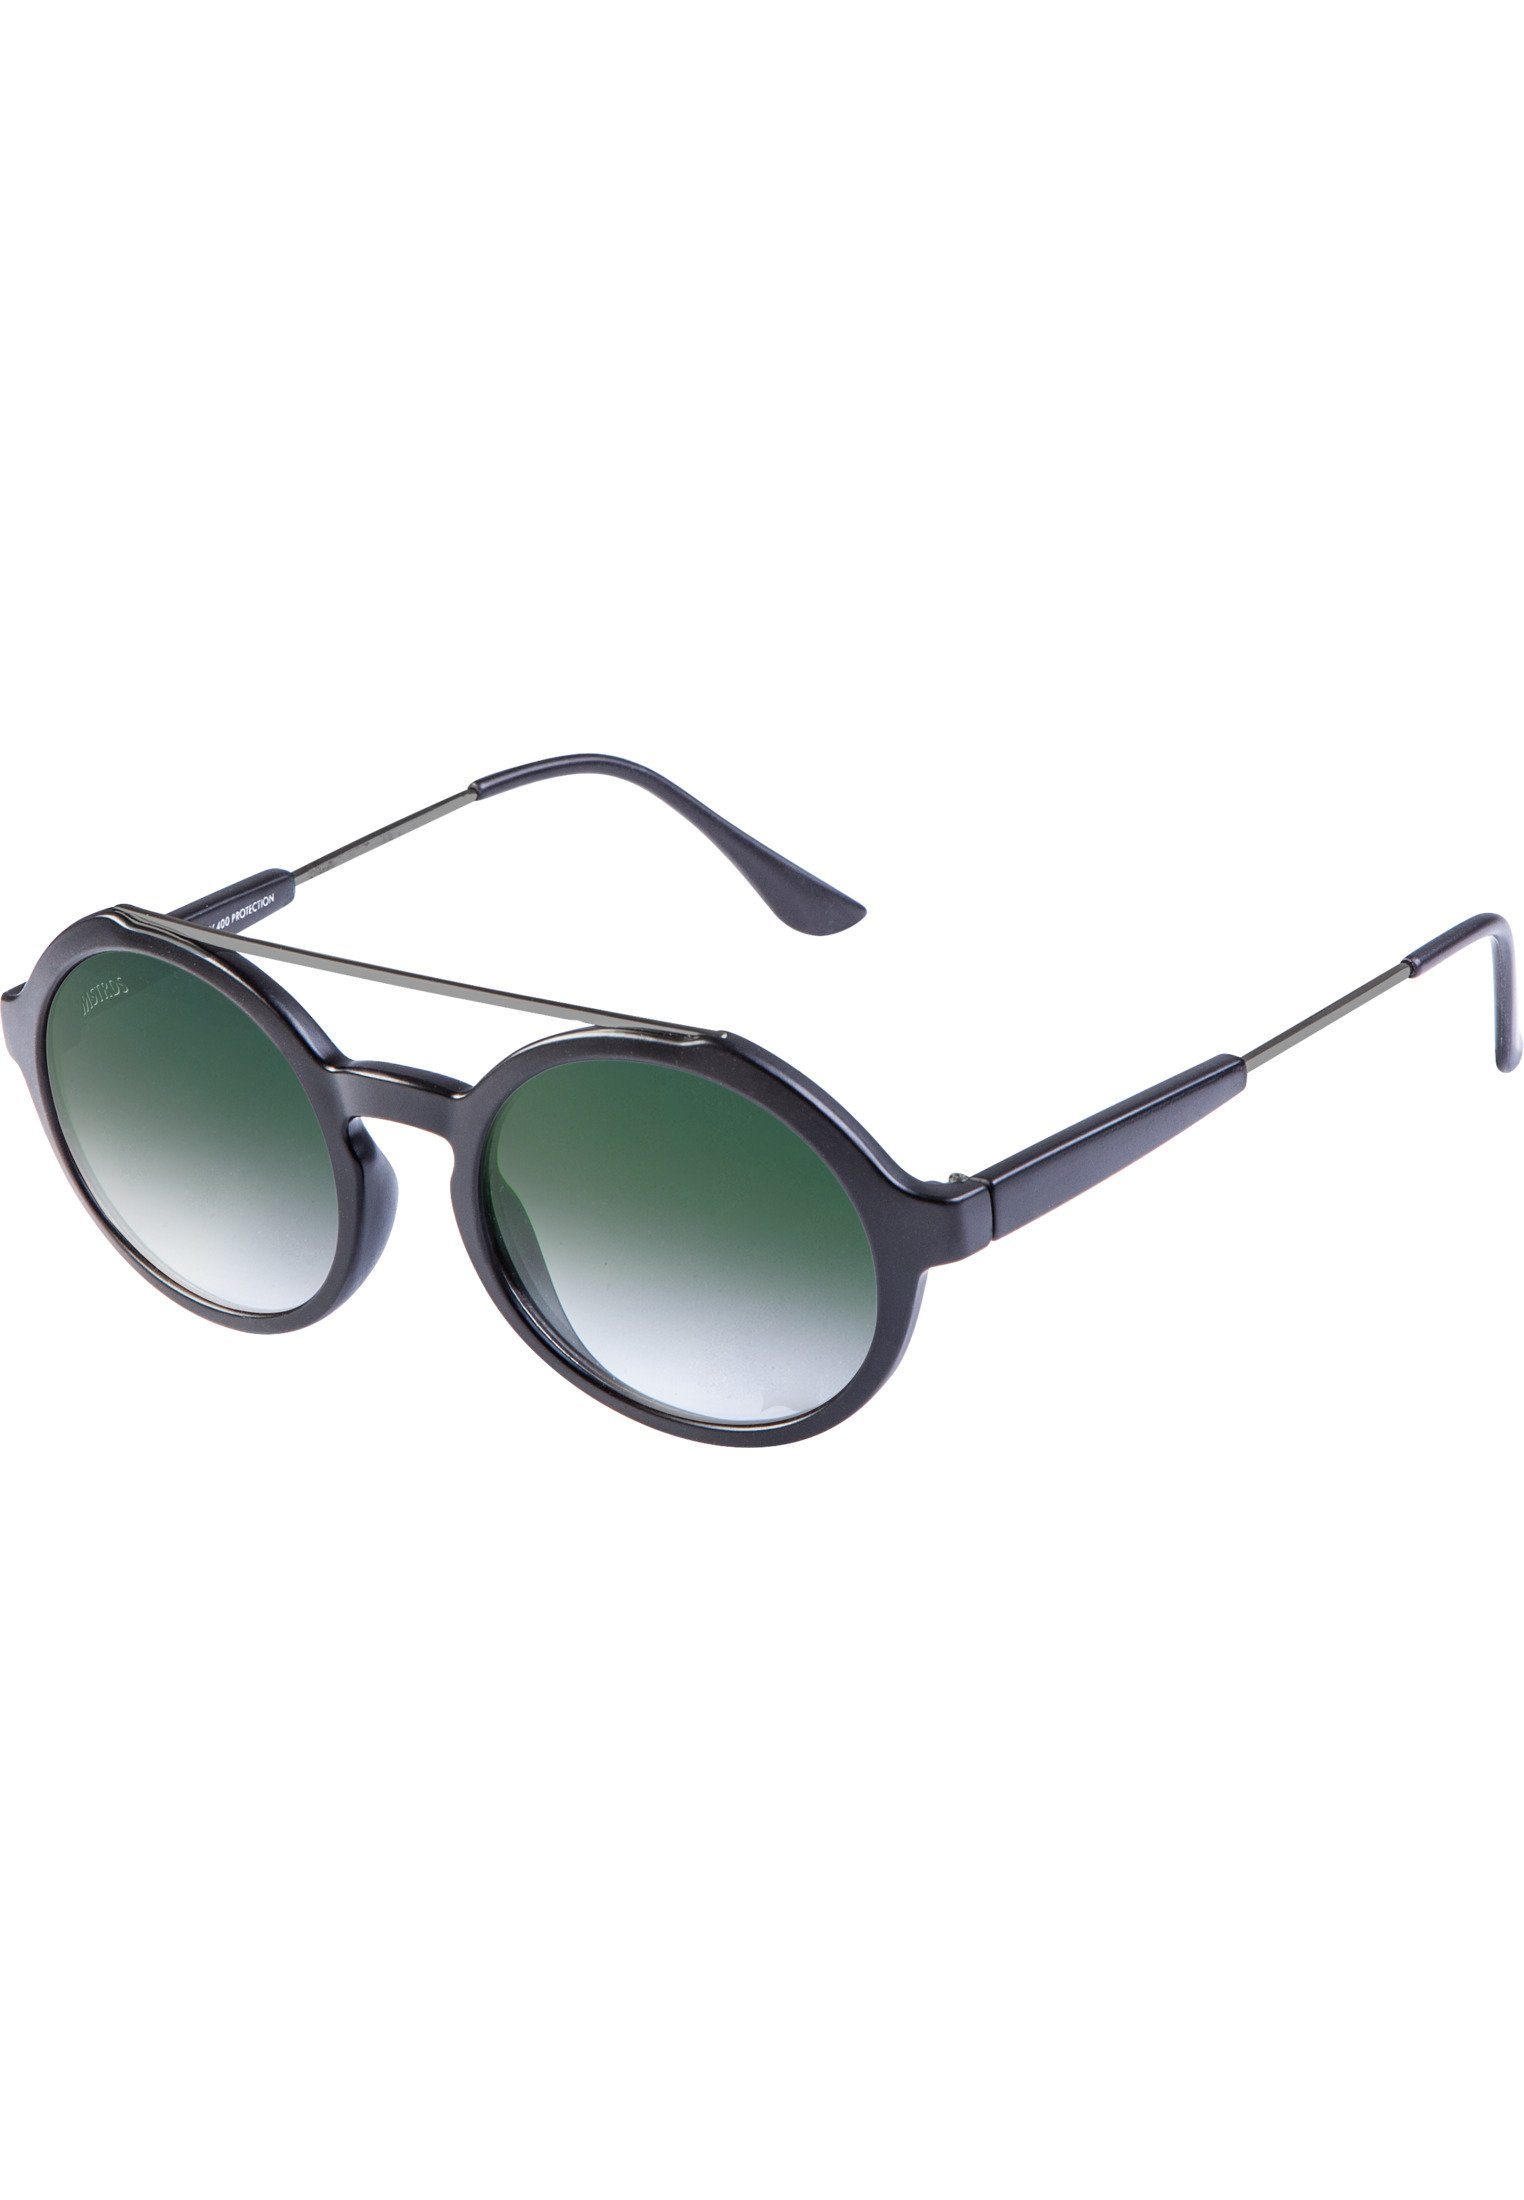 Sunglasses Retro Accessoires blk/grn Sonnenbrille Space MSTRDS